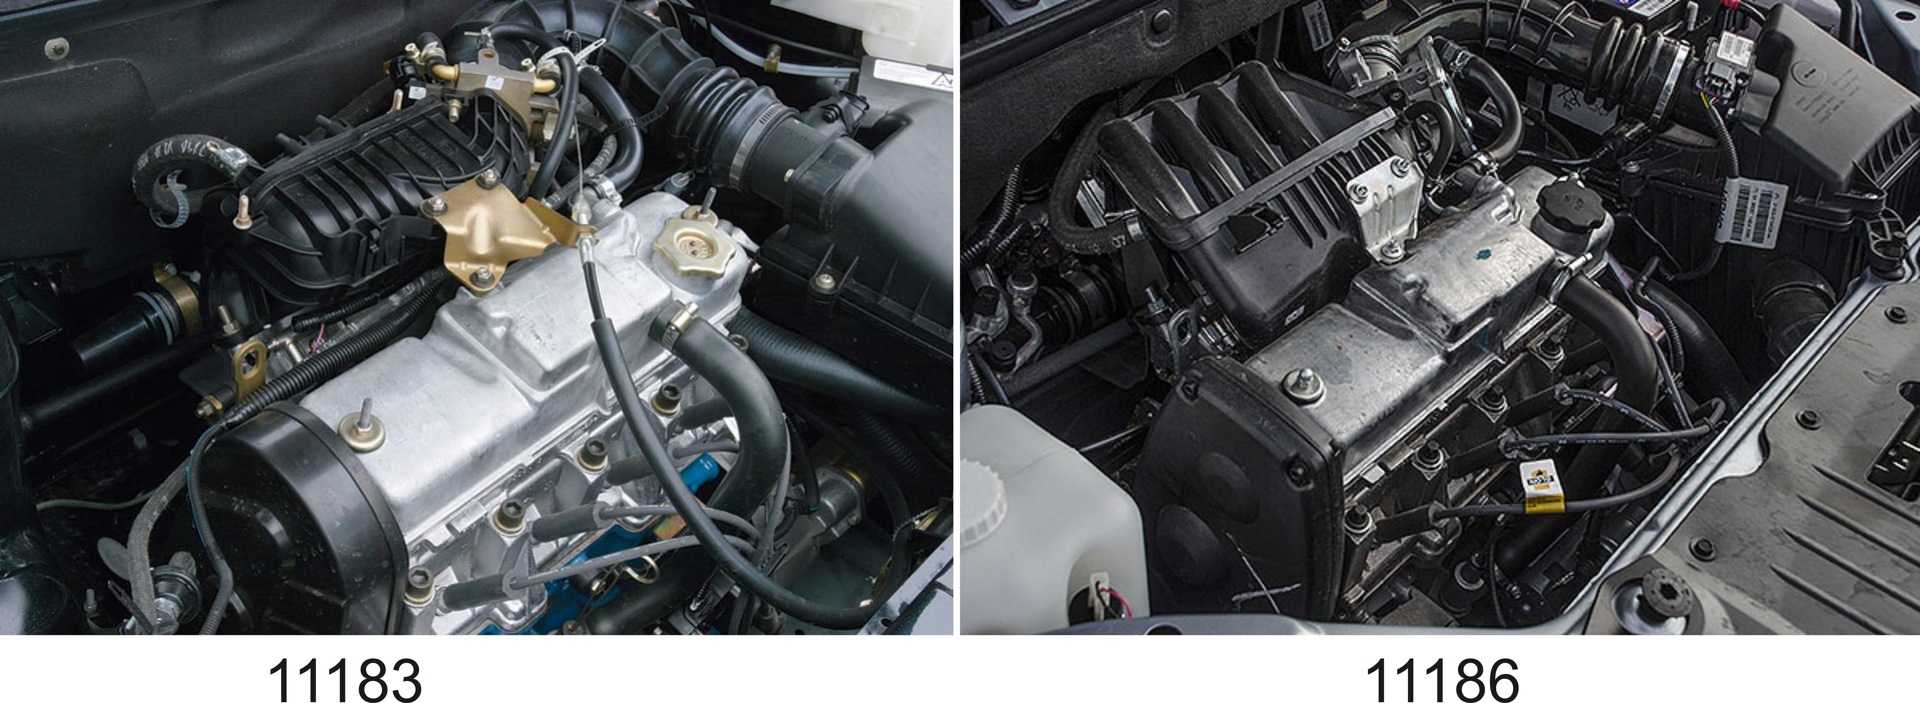 Лада Гранта с двигателем 8 клапанов: характеристики мотора ВАЗ 21116, его особенности, плюсы и минусы Обслуживание, надежность, ресурс двигателя Гранта